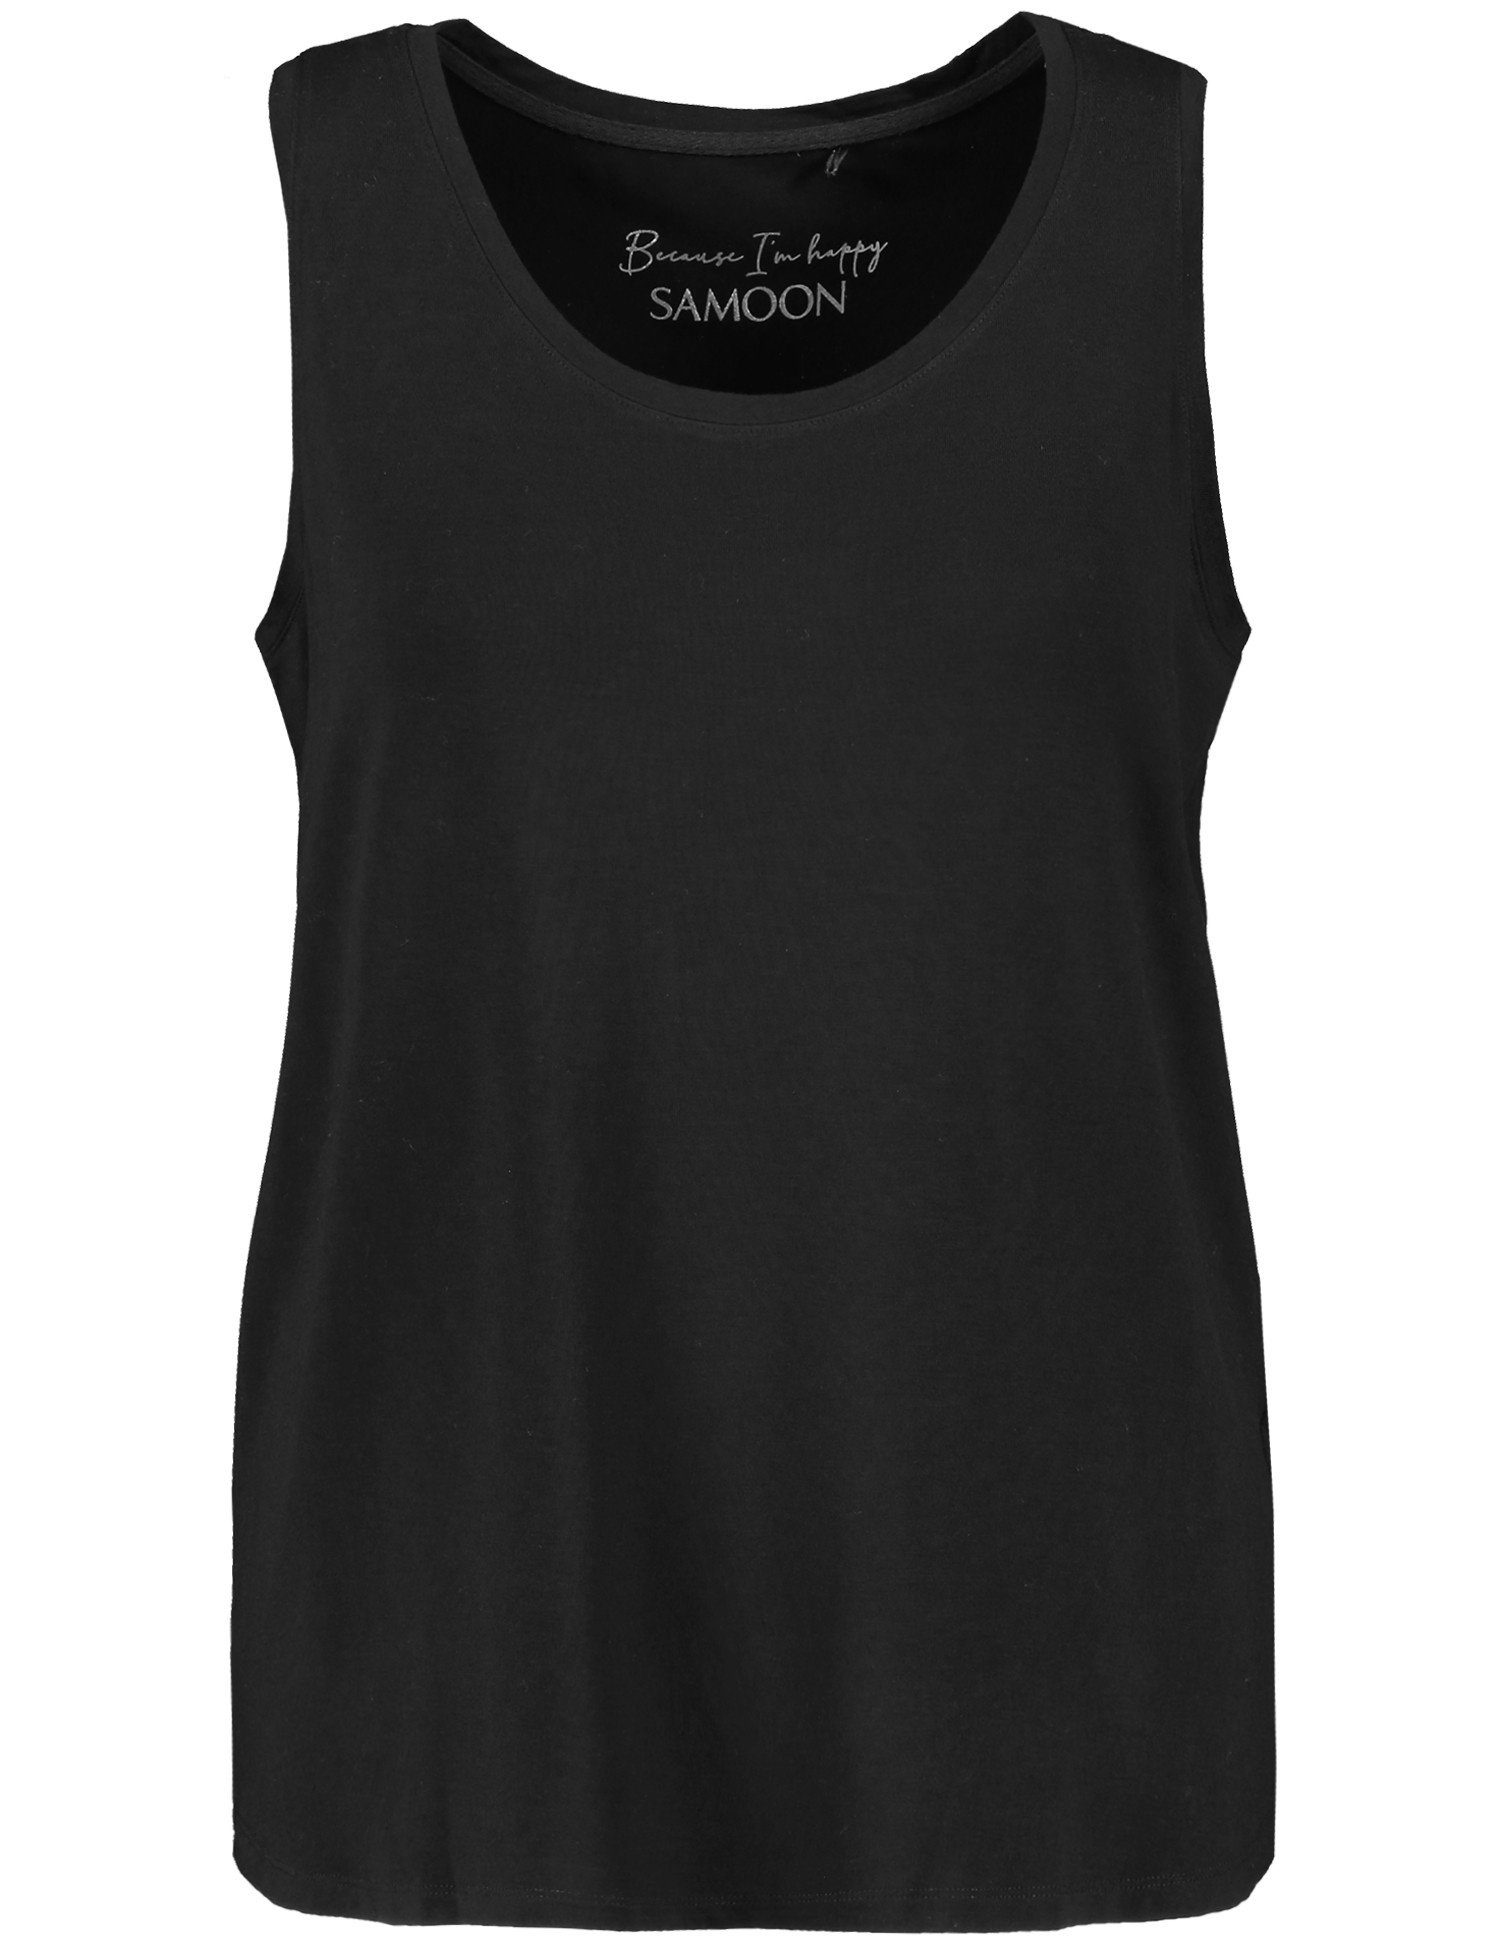 Shirttop Seitenschlitzen Samoon Black mit Basic-Top